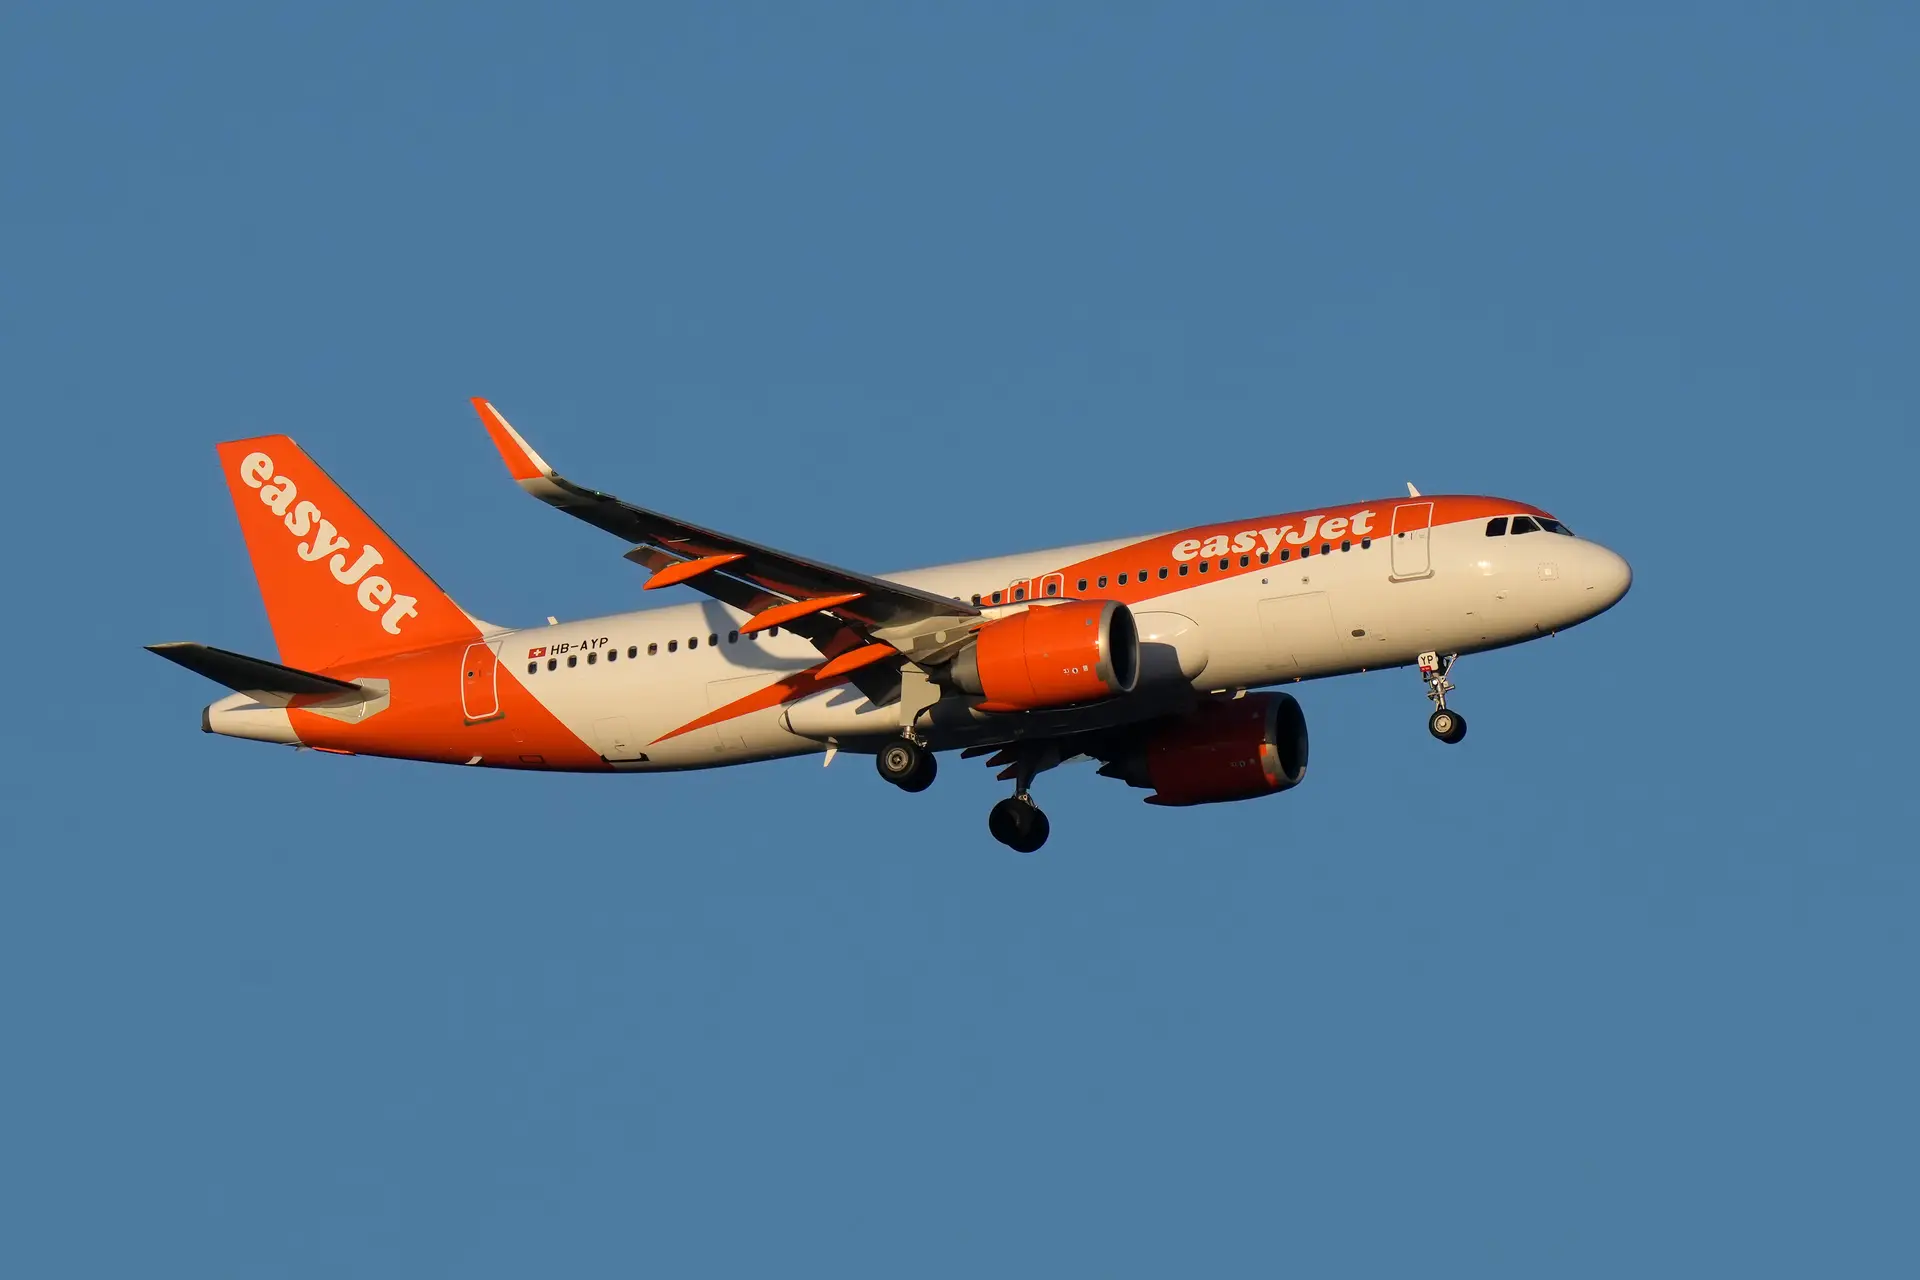 “Enorme disrupção”: sindicato alerta que voos da EasyJet no verão podem estar comprometidos